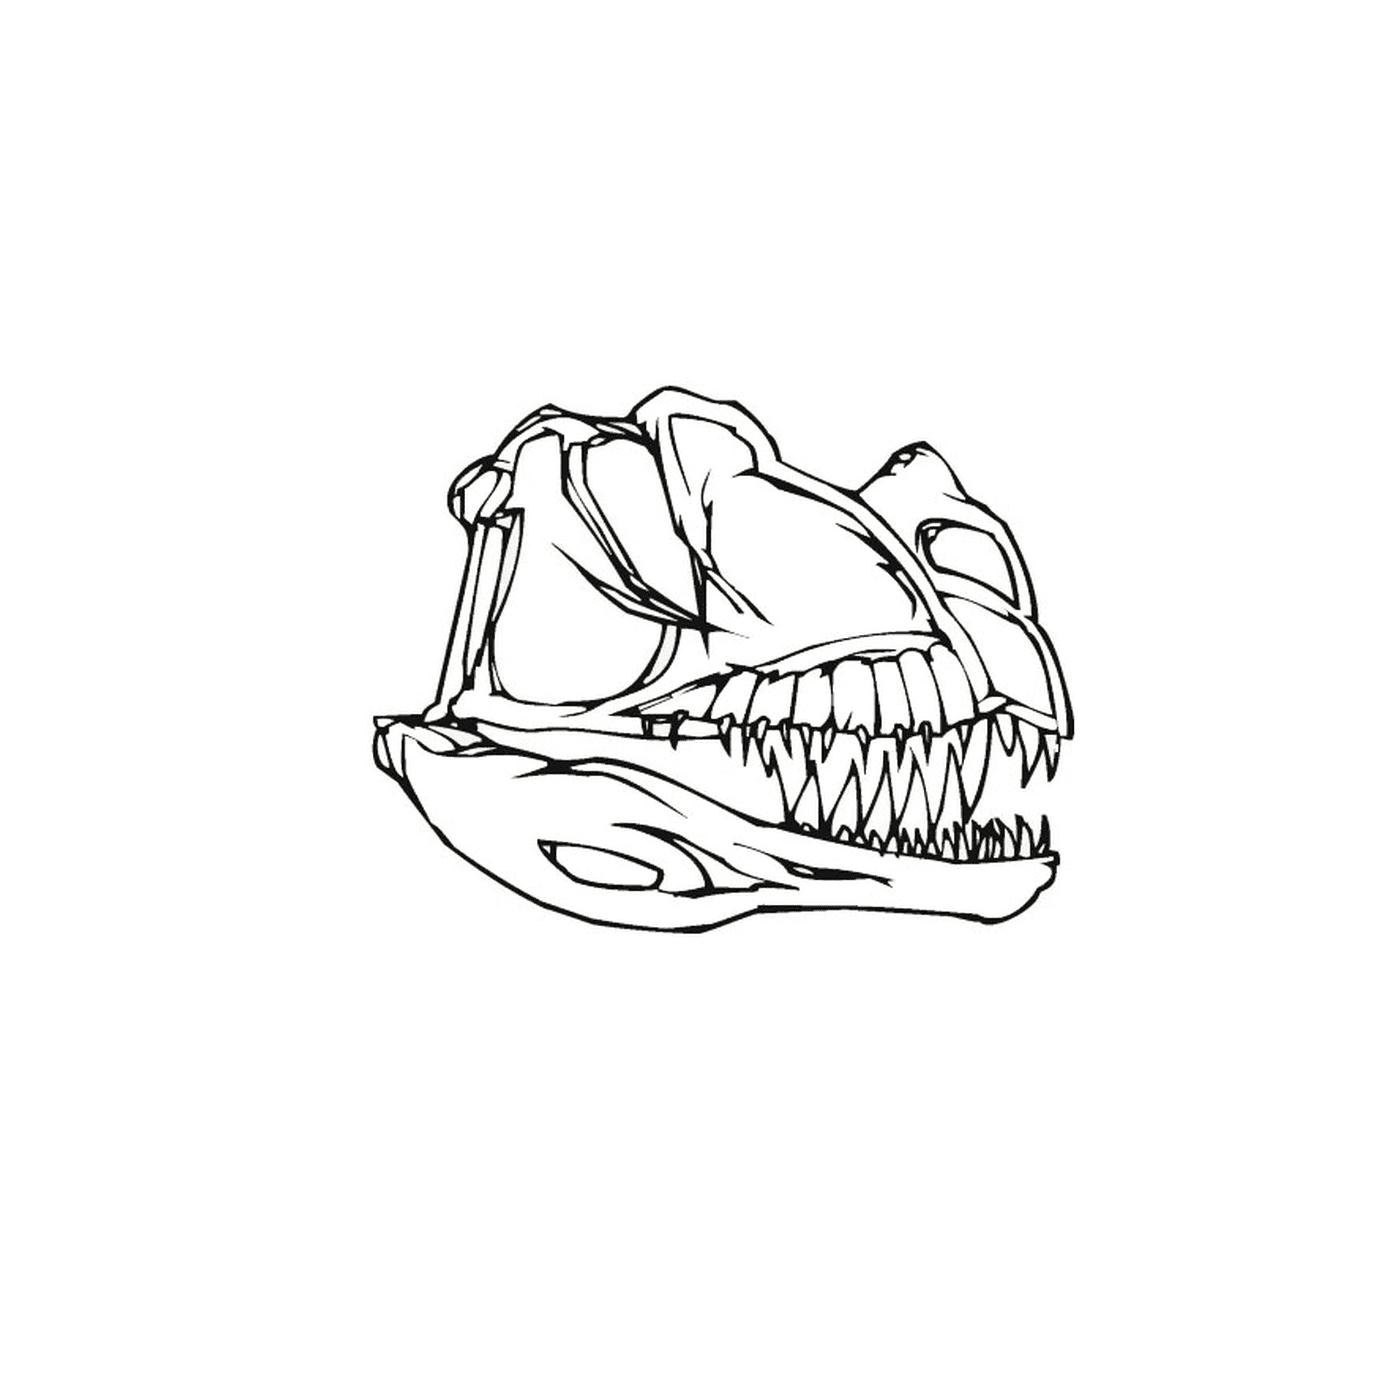  Der Schädel eines Dinosauriers mit Zähnen 